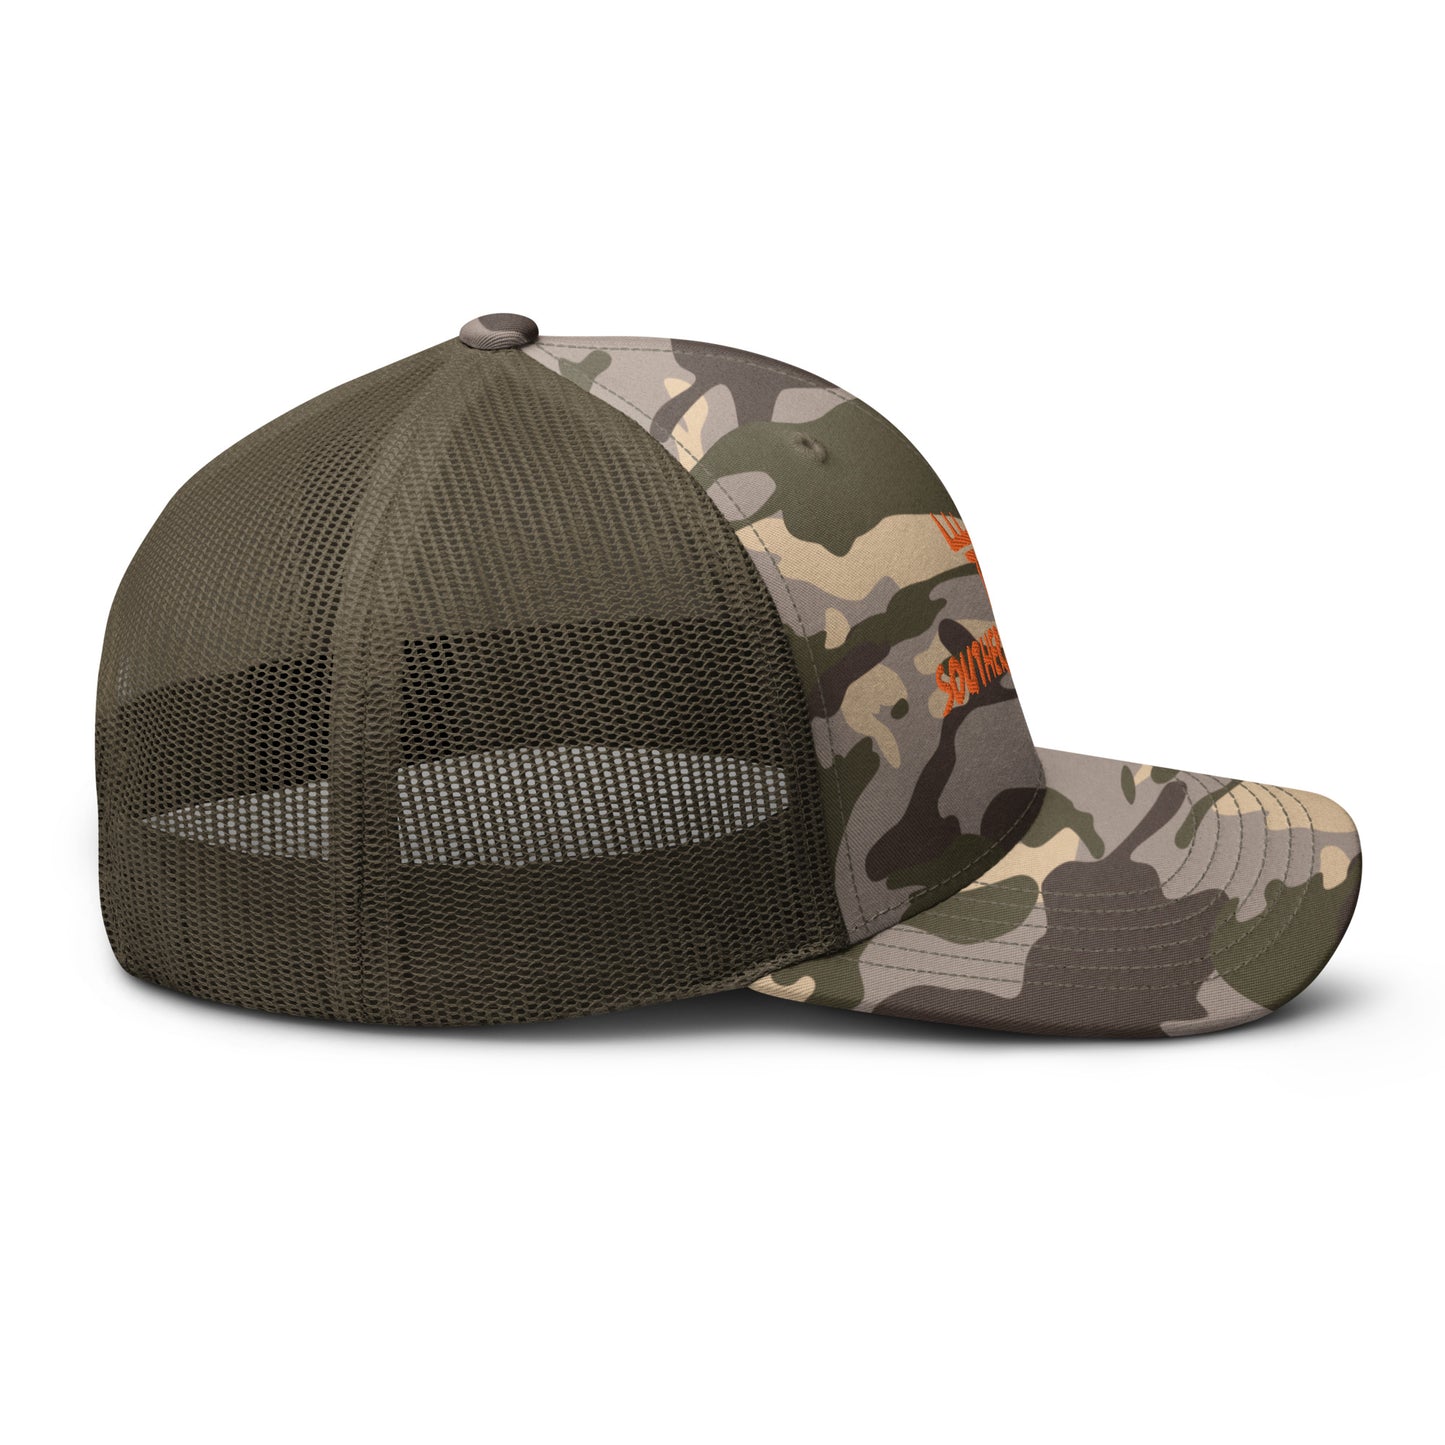 SC Camouflage trucker hat